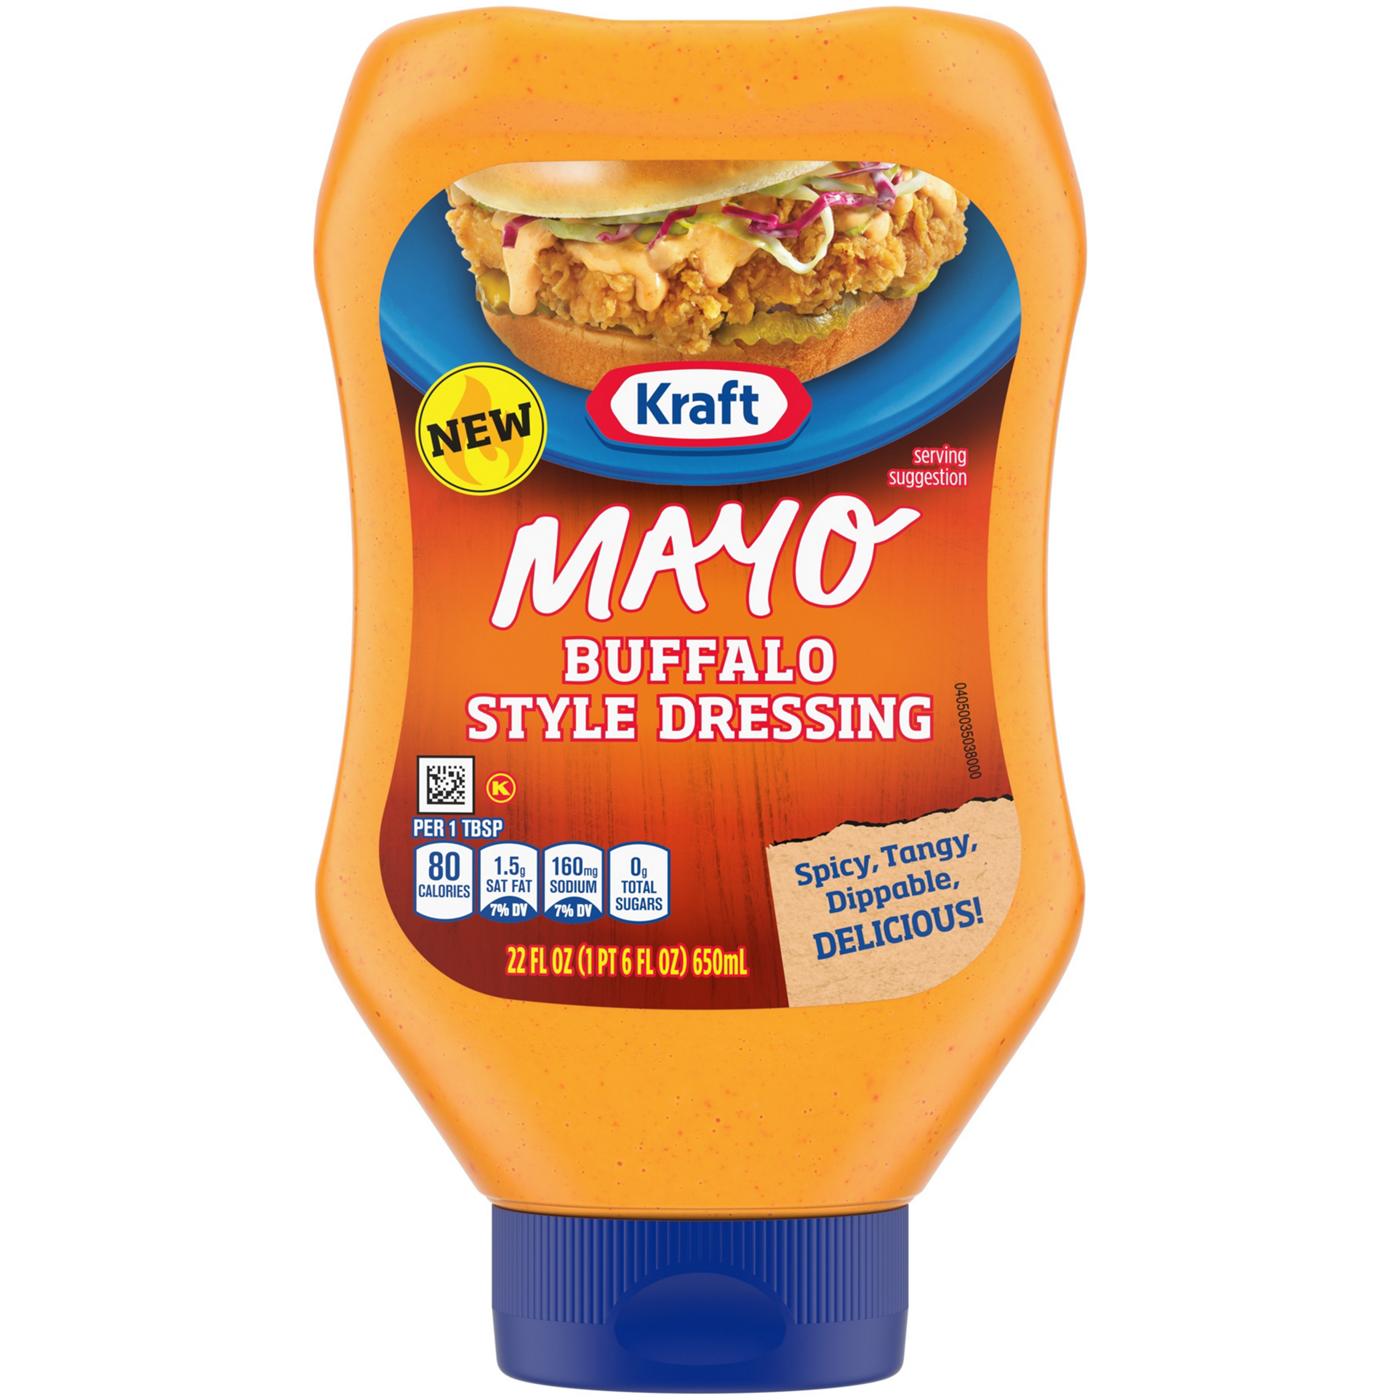 Kraft Mayo Buffalo Style Dressing; image 1 of 2